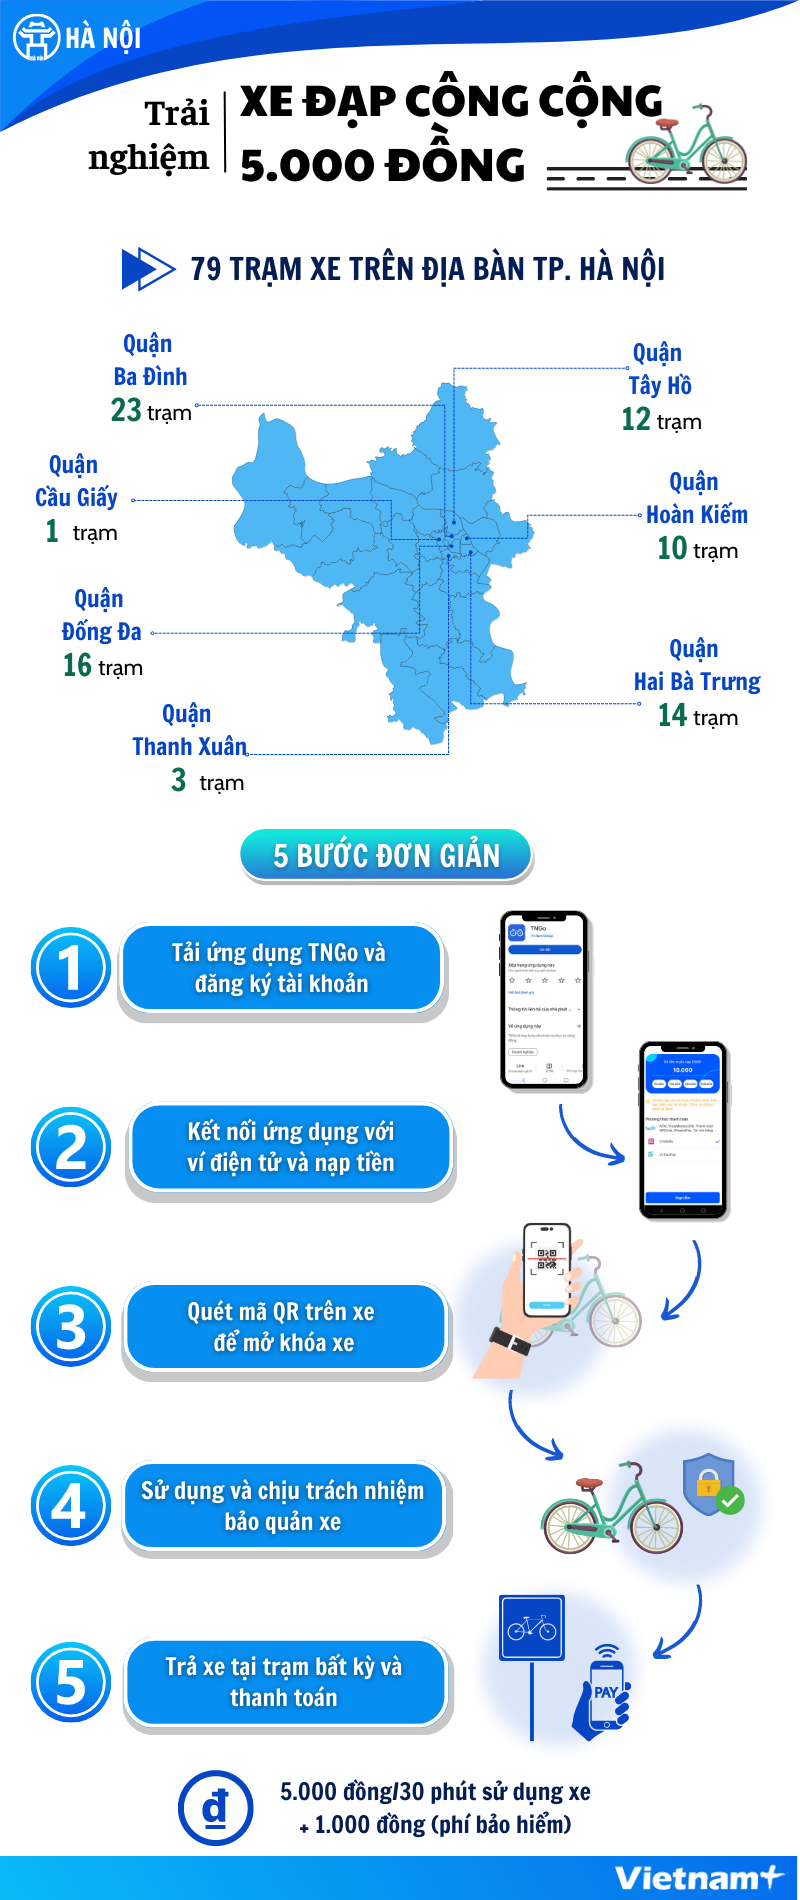 Người dân Hà Nội có thể thuê xe đạp công cộng trên địa bàn quận nào? - Ảnh 1.